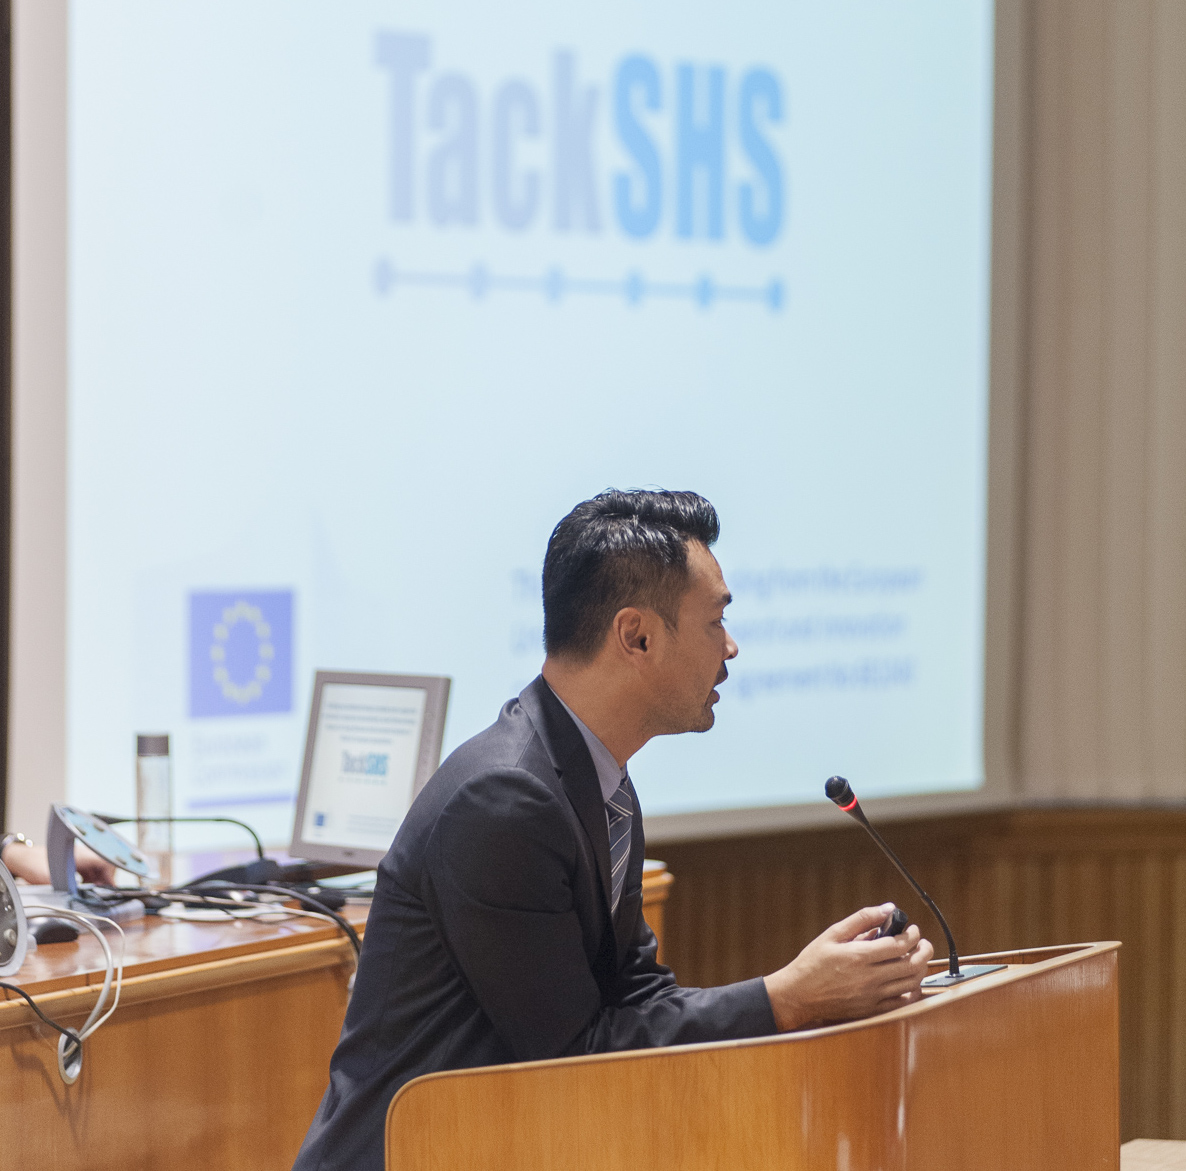 TackSHS presented at ENSP Conference in Ljubljana, Slovenia